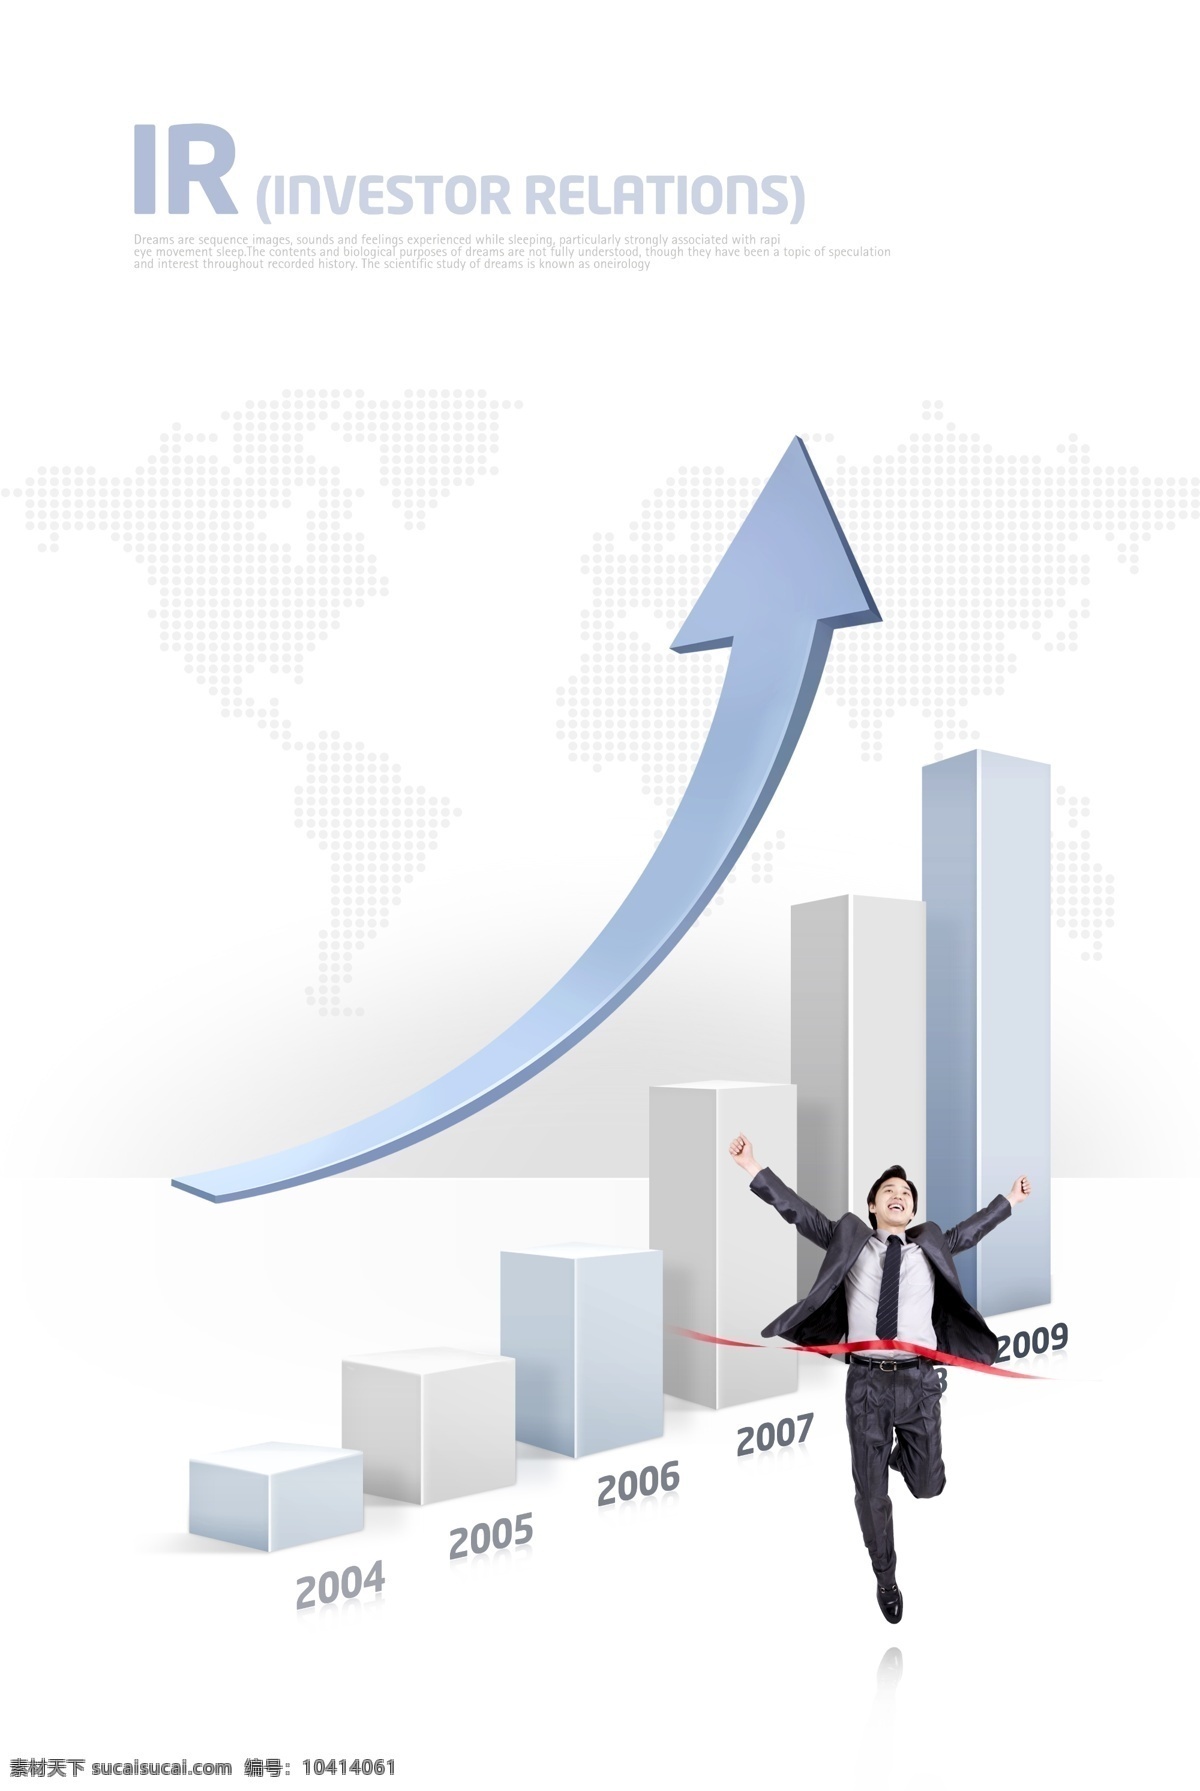 企业 发展 数据 图 psd素材 欢喜 箭头 商务 商业 走势 年份分析 跳跃的人物 psd源文件